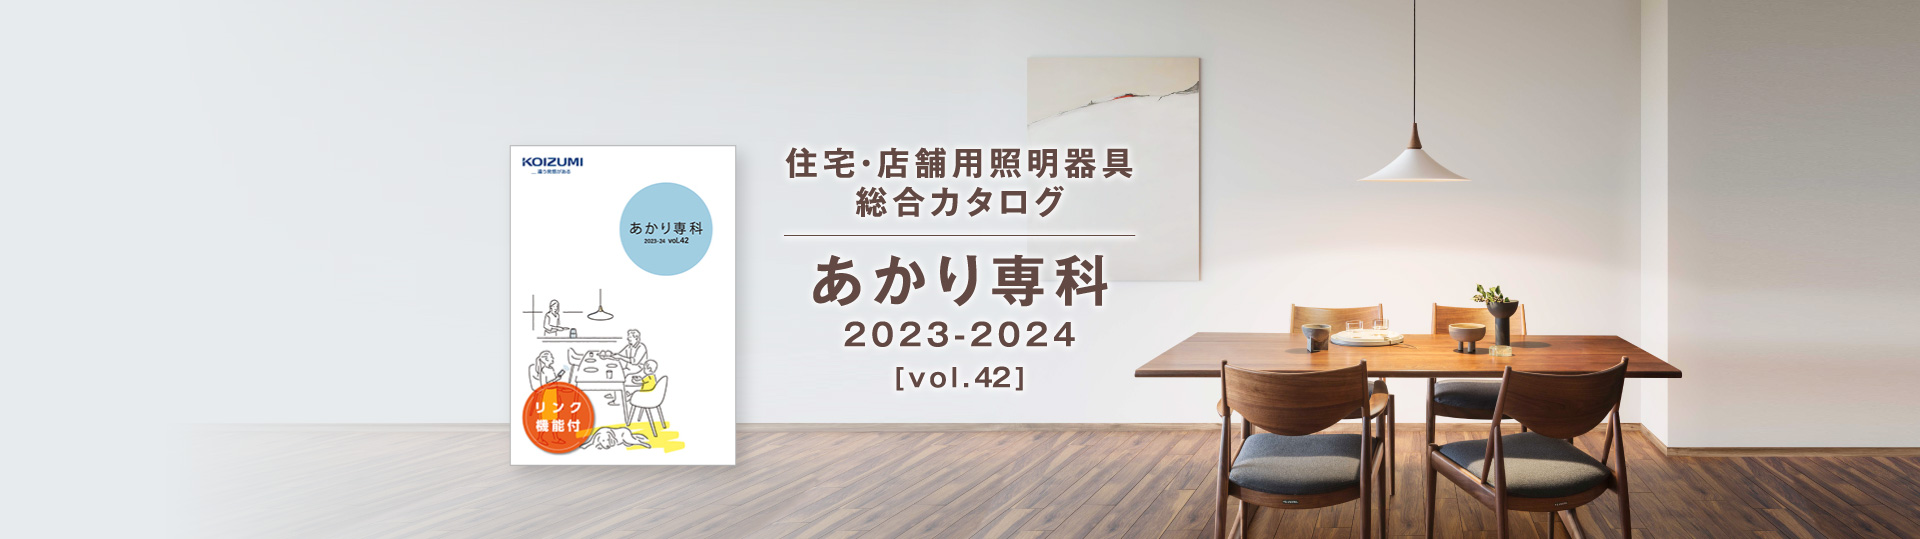 住宅・店舗用照明器具総合カタログ あかり専科[vol.41] 2022-2023